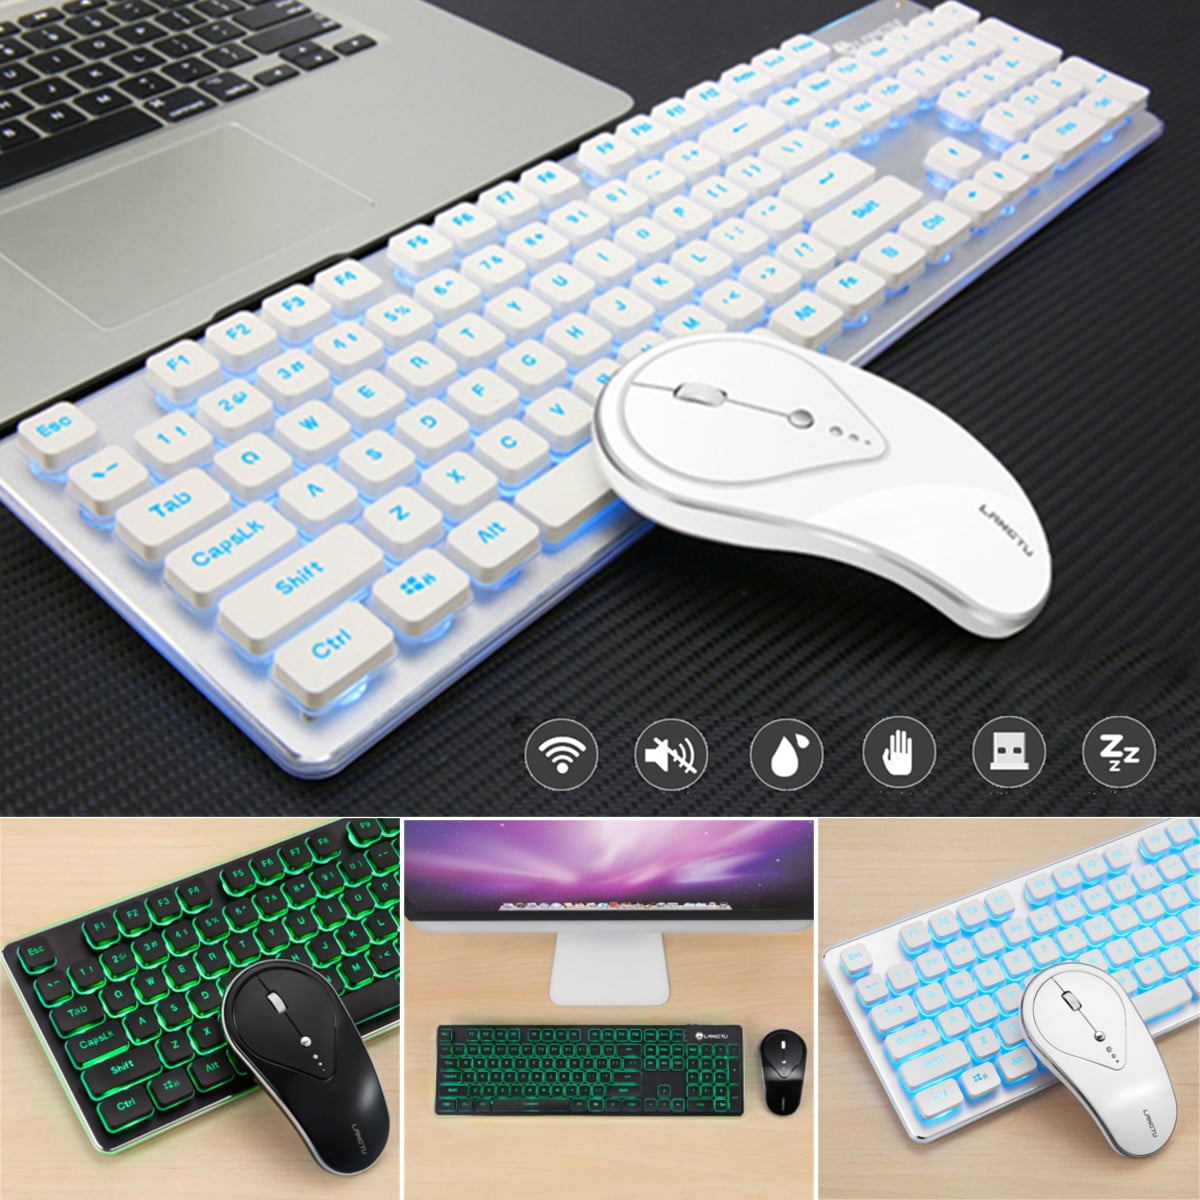 F1 Wireless Keyboard Mouse Suit for Game Home Office Laptop Desktop Ergonomic 2400DPI Waterproof Blue 